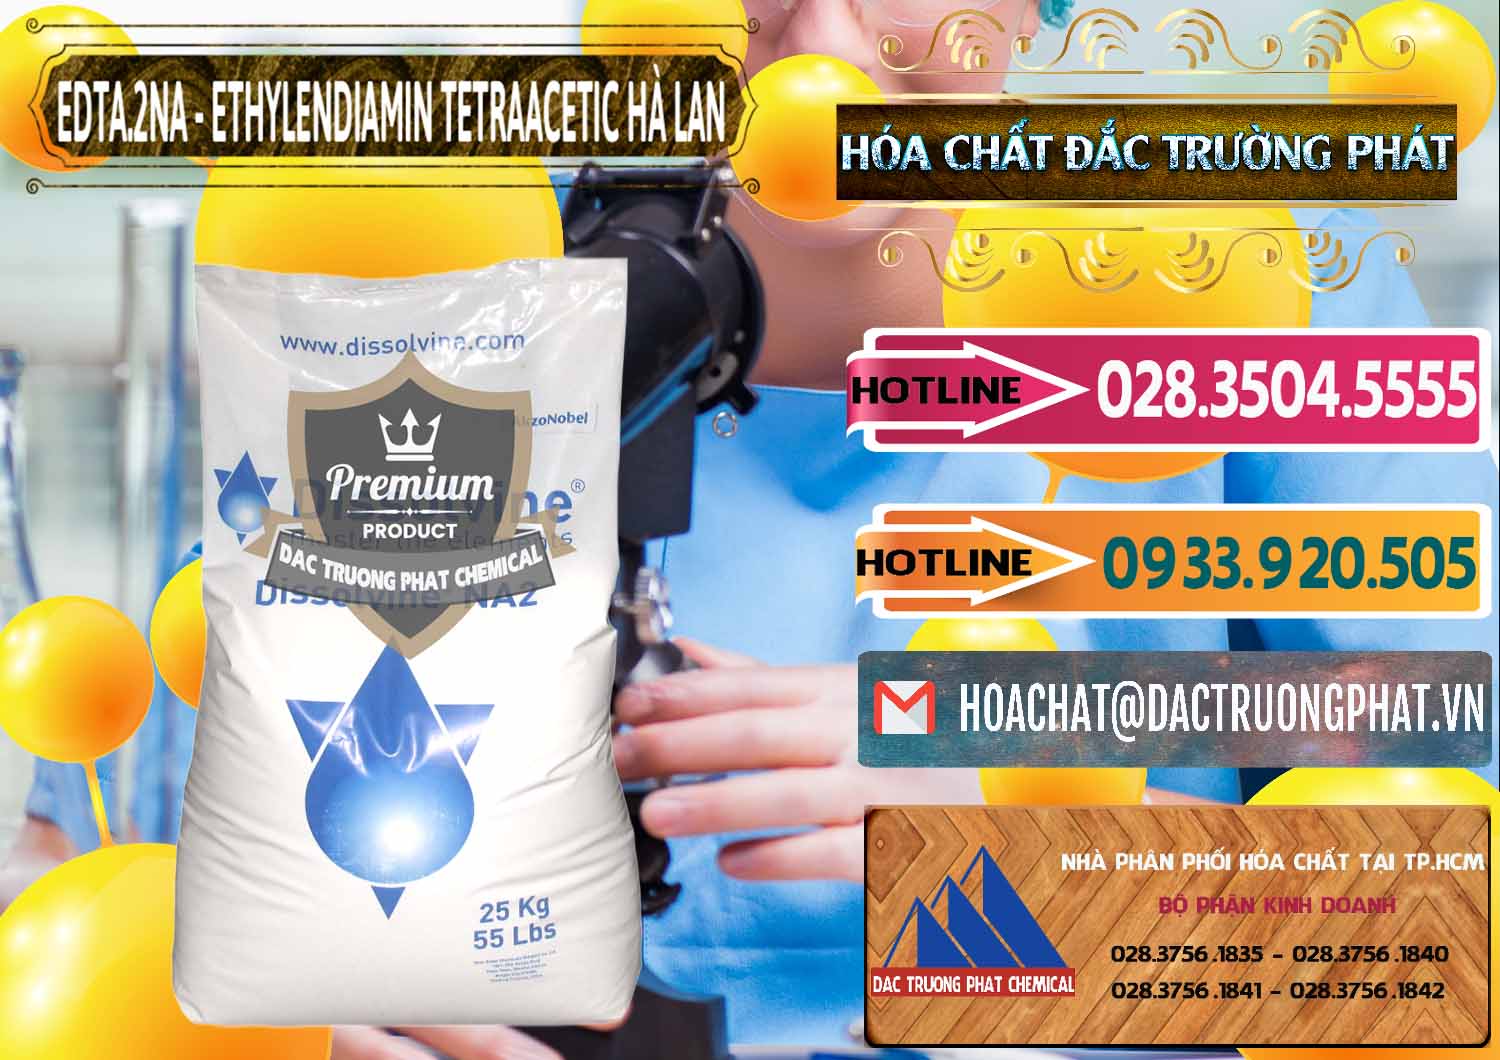 Công ty nhập khẩu và bán EDTA.2NA - Ethylendiamin Tetraacetic Dissolvine Hà Lan Netherlands - 0064 - Đơn vị chuyên phân phối ( nhập khẩu ) hóa chất tại TP.HCM - dactruongphat.vn